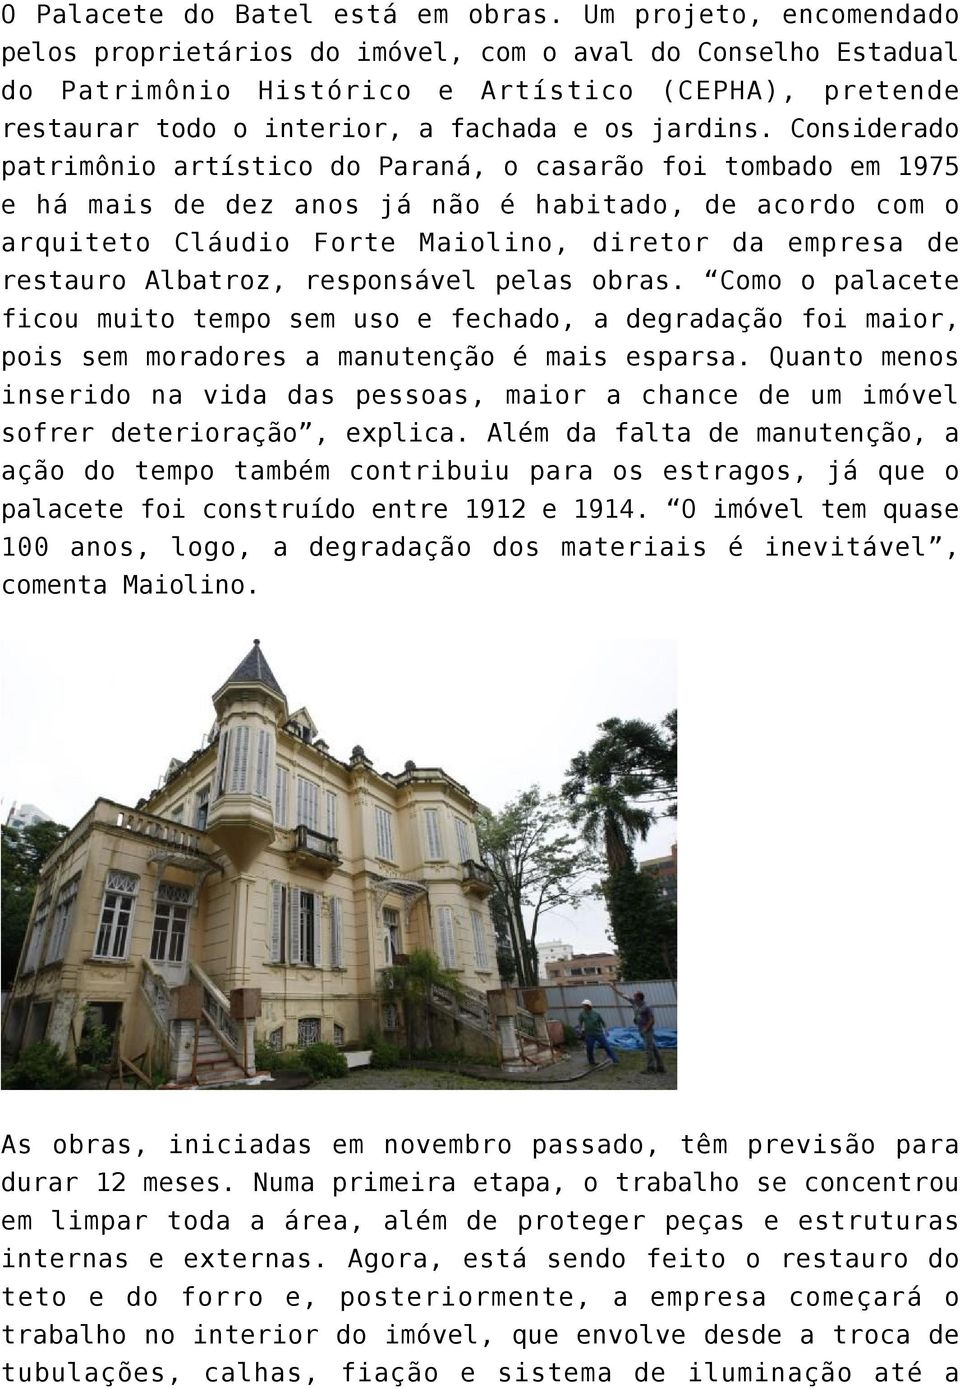 Considerado patrimônio artístico do Paraná, o casarão foi tombado em 1975 e há mais de dez anos já não é habitado, de acordo com o arquiteto Cláudio Forte Maiolino, diretor da empresa de restauro